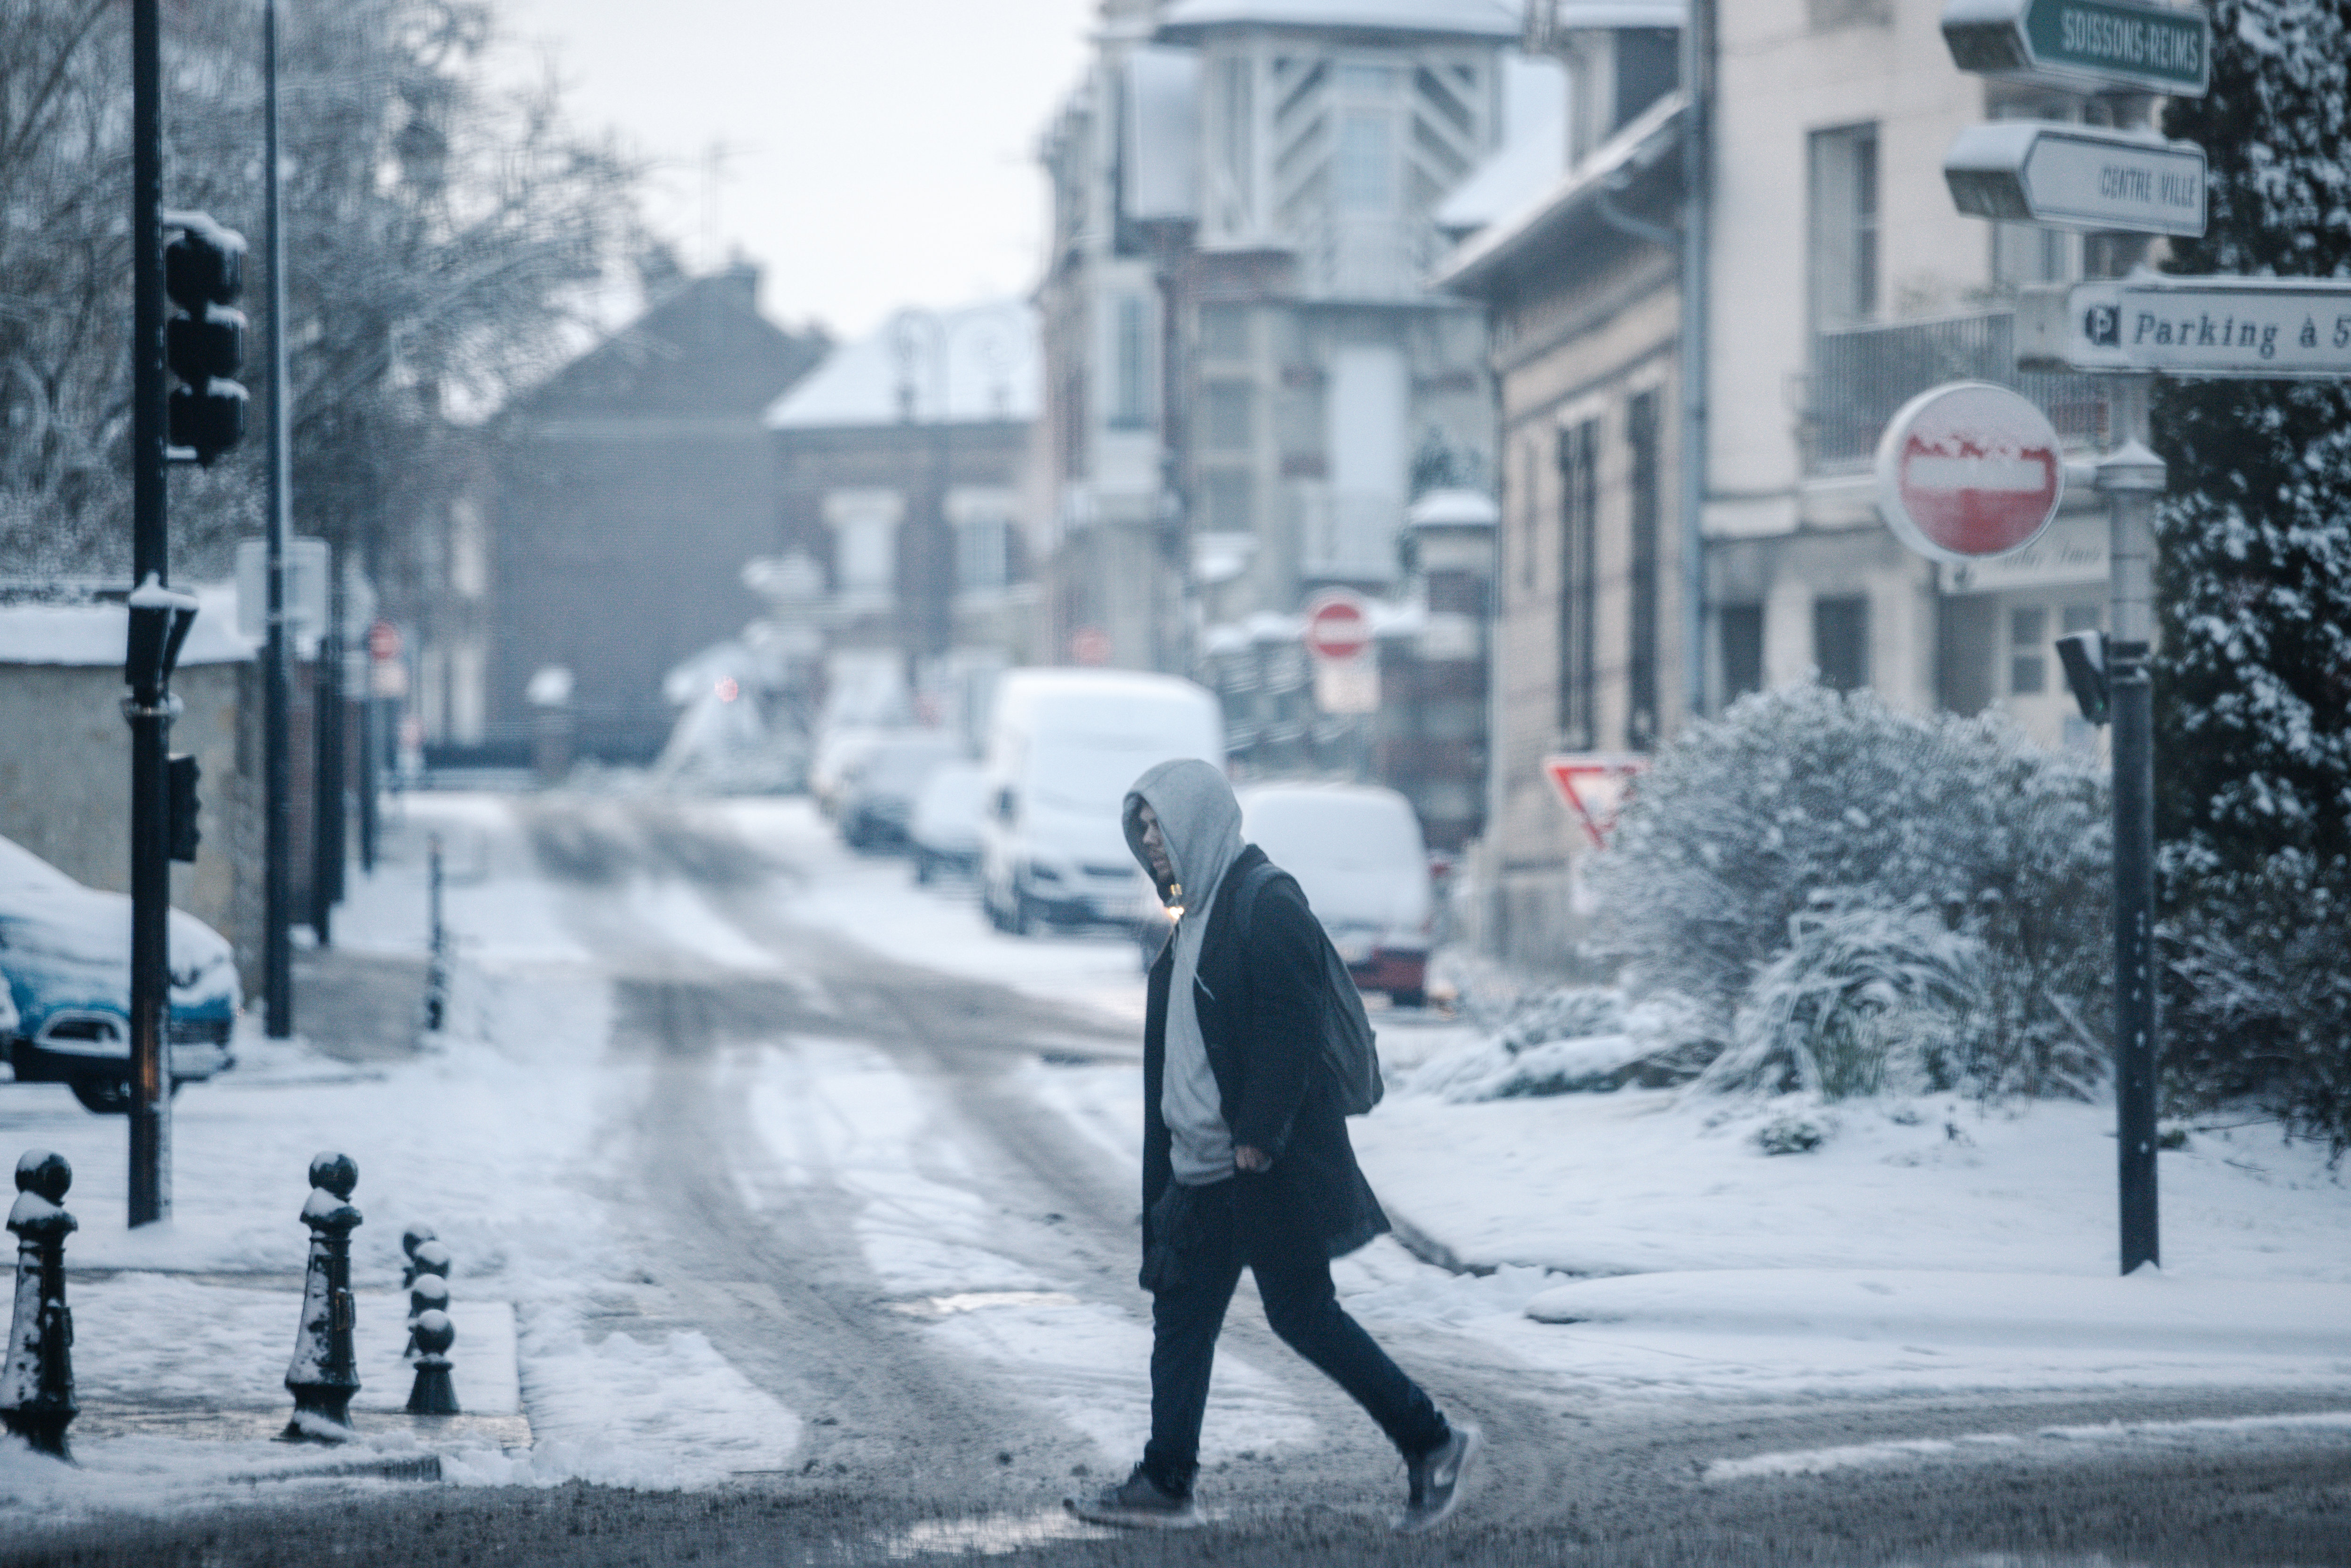 Météo France évoque un « épisode de neige tardif, pouvant occasionner une gêne pour la circulation routière, nécessitant donc une vigilance particulière ». LP/Arnaud Dumontier